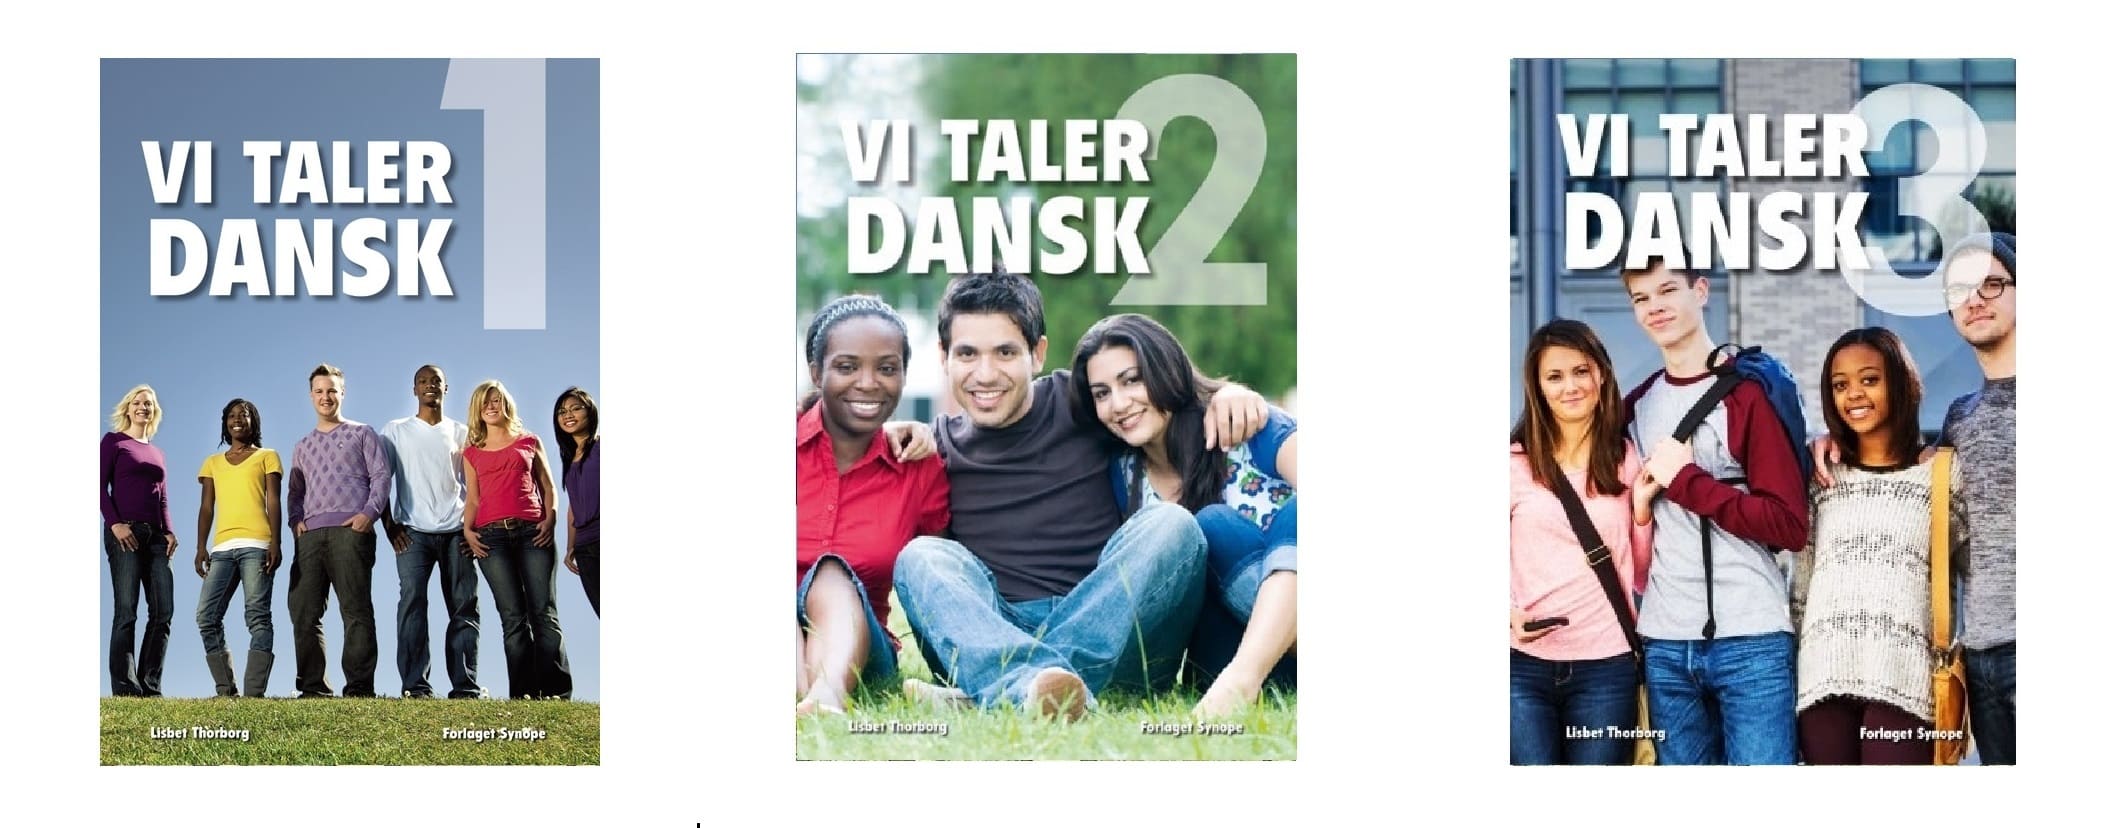 خرید کتاب زبان دانمارکی | فروشگاه اینترنتی کتاب زبان | Vi Taler Dansk | وی تالر دنسک